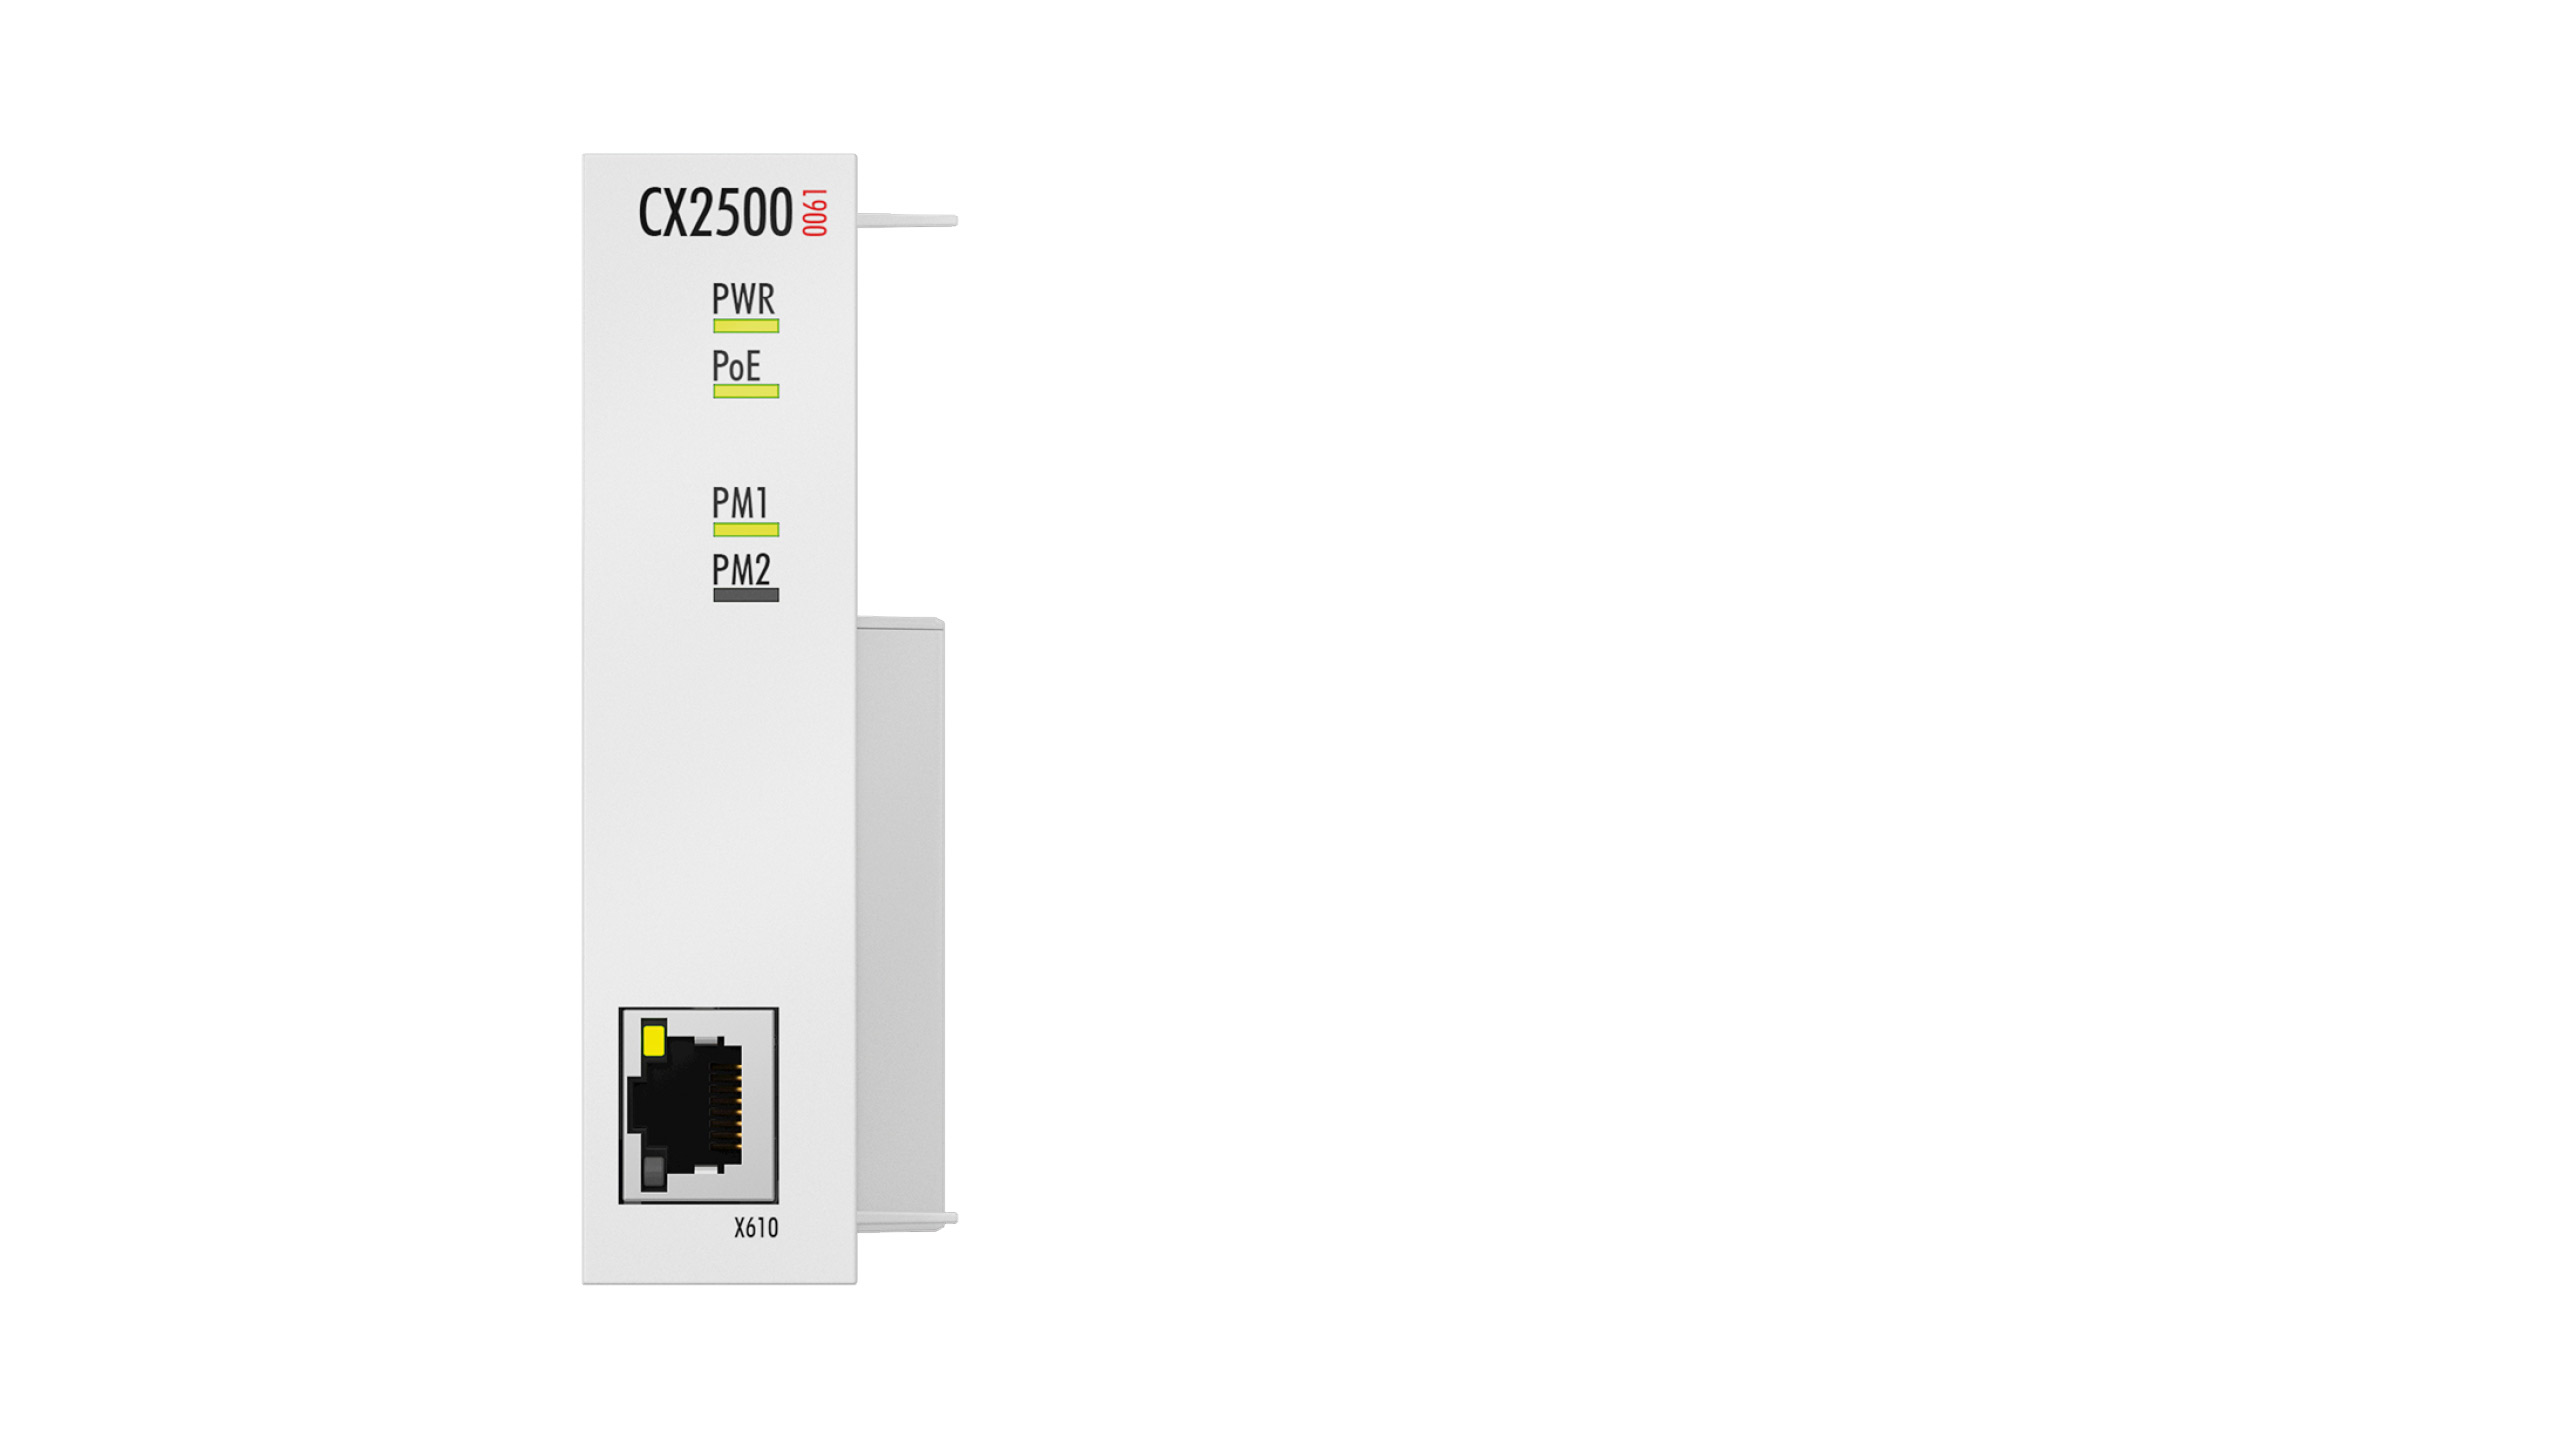 CX2500-0061 | Power over Ethernet module for CX20xx, CX52x0, CX53x0, CX56x0